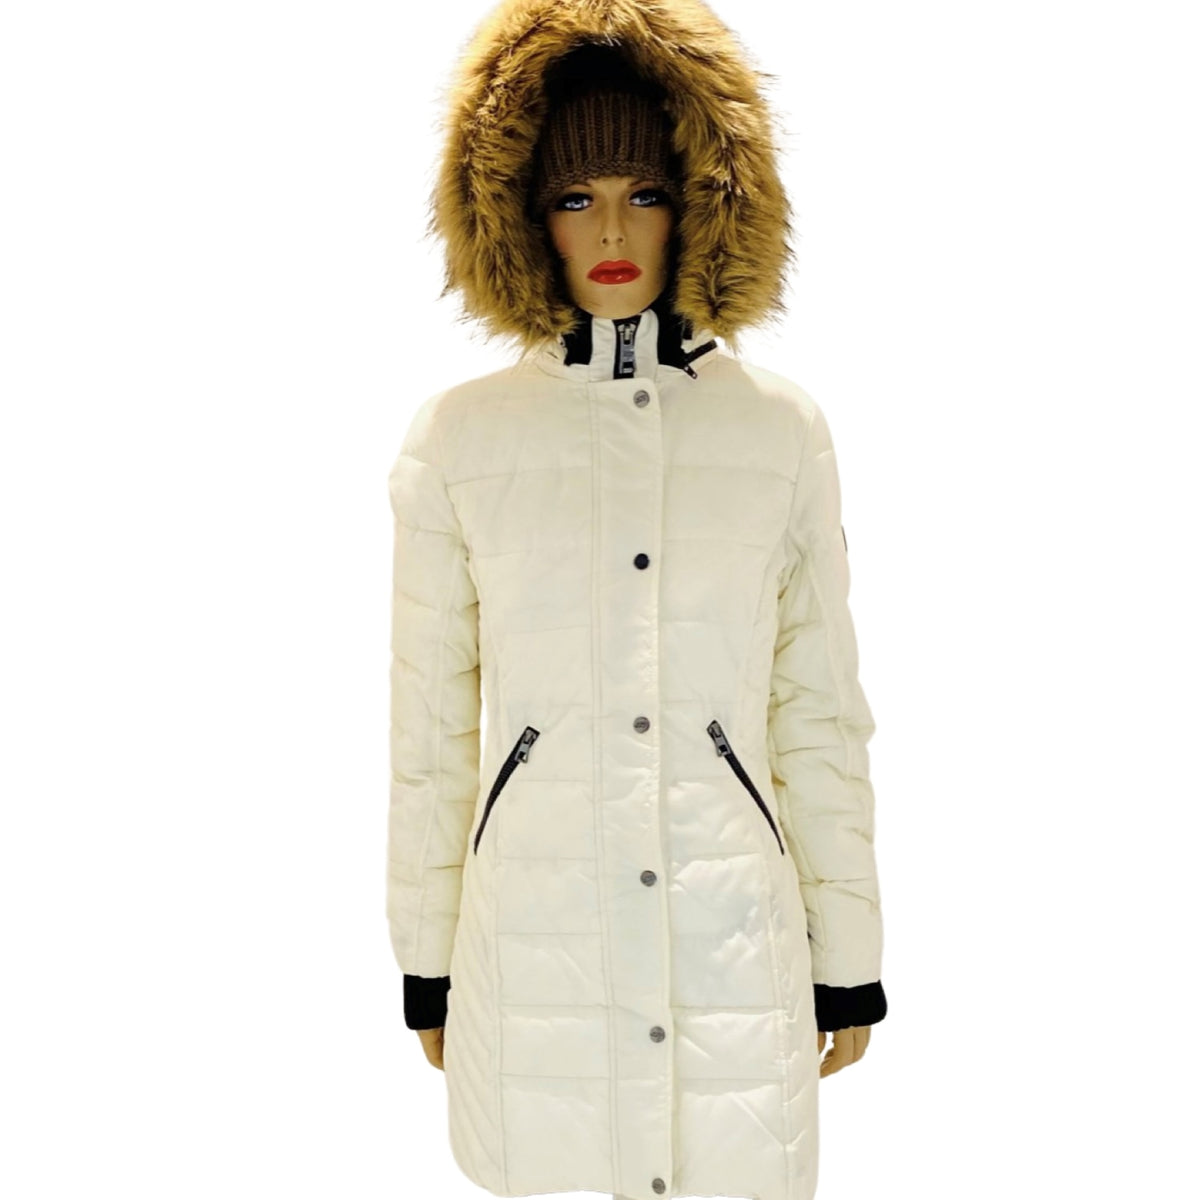 Ce manteau hiver pour femme de la marque ARCTIC WEAR est un choix parfait pour les temps froids. Avec son design chaud et élégant, ce manteau hiver femme solde vous gardera au chaud tout en vous donnant un look tendance. Profitez d'un confort optimal et d'une allure sophistiquée avec ce manteau femme soldé.